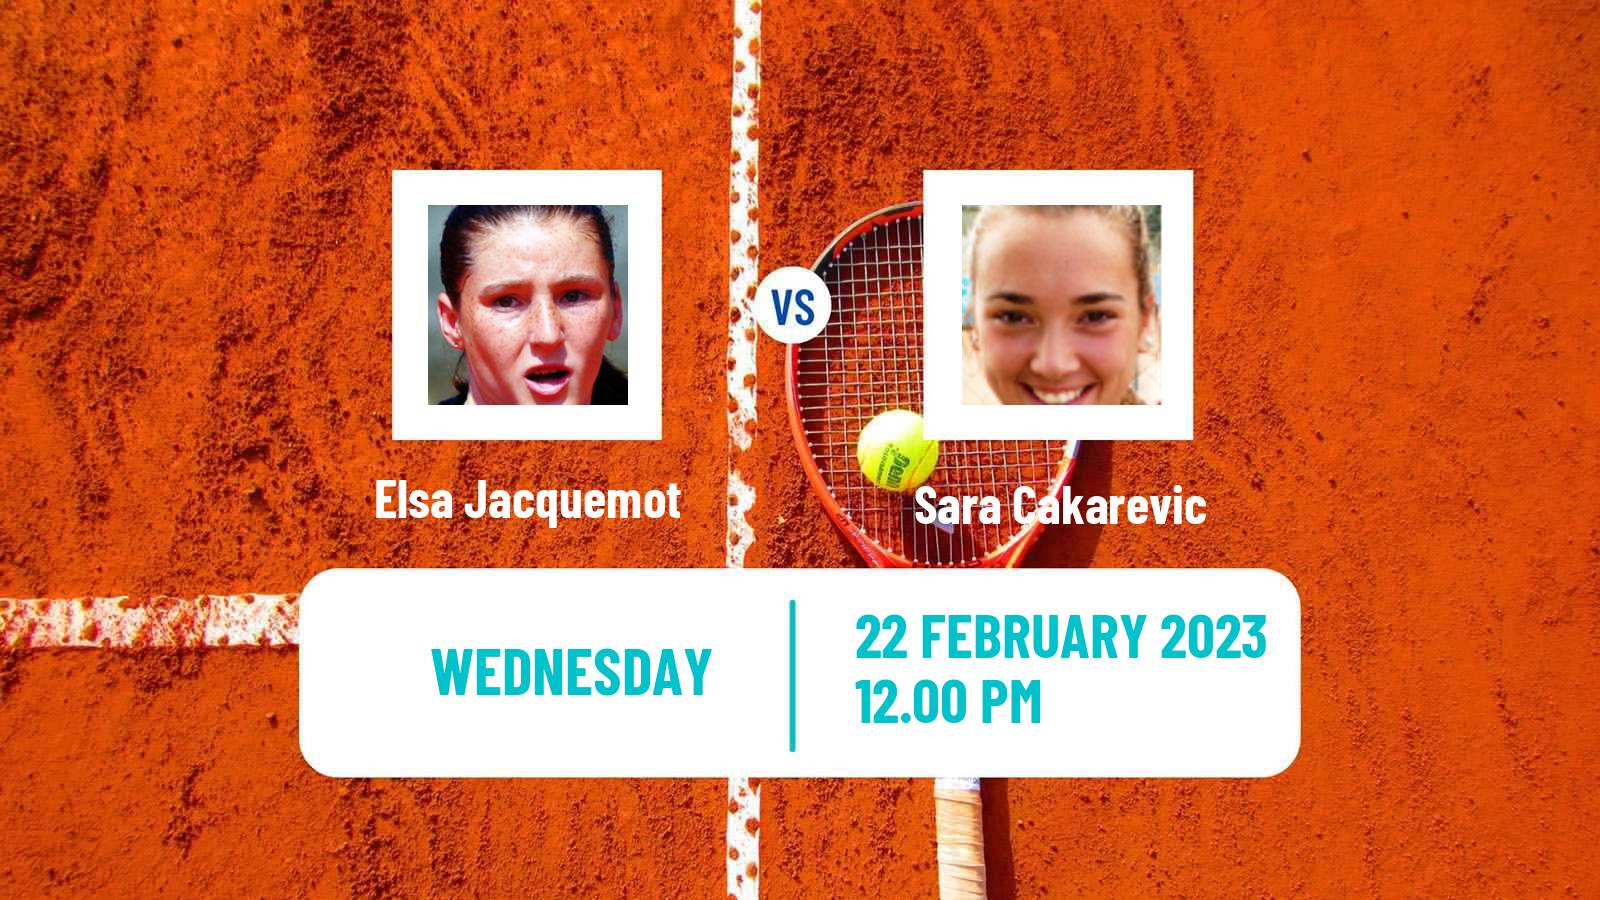 Tennis ITF Tournaments Elsa Jacquemot - Sara Cakarevic